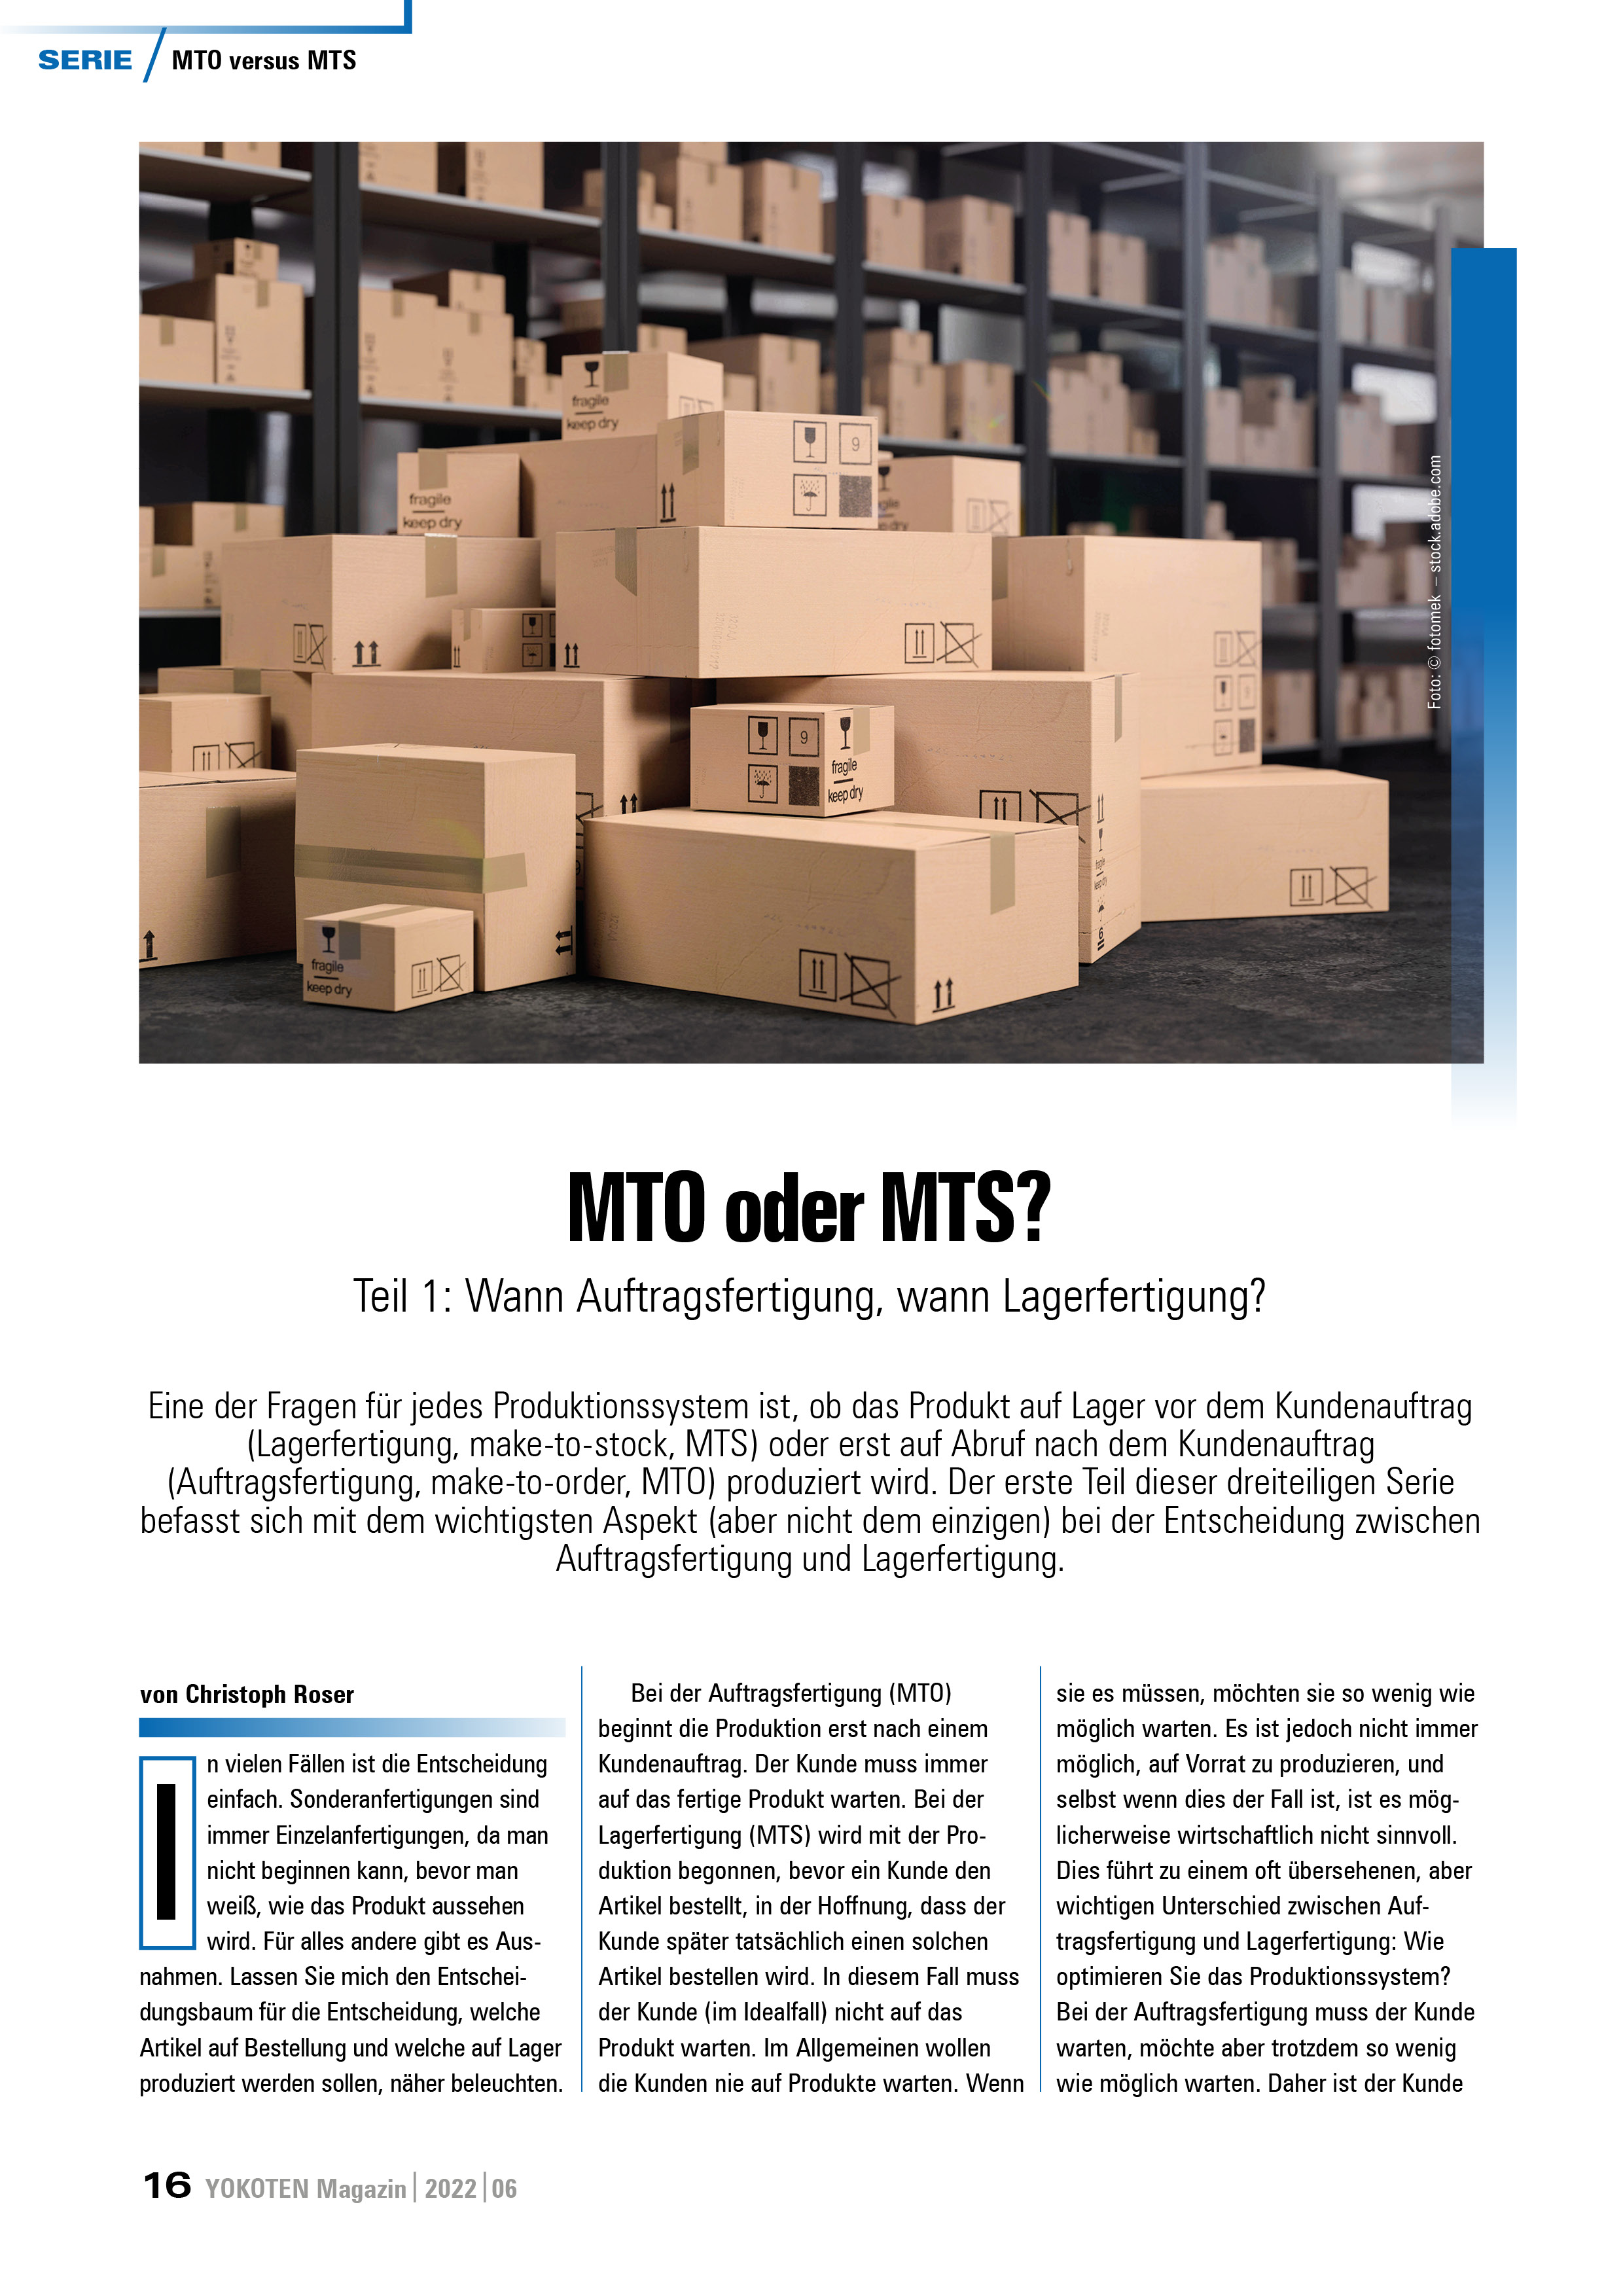 MTO oder MTS? - Teil 1 - Artikel aus Fachmagazin YOKOTEN 2022-06